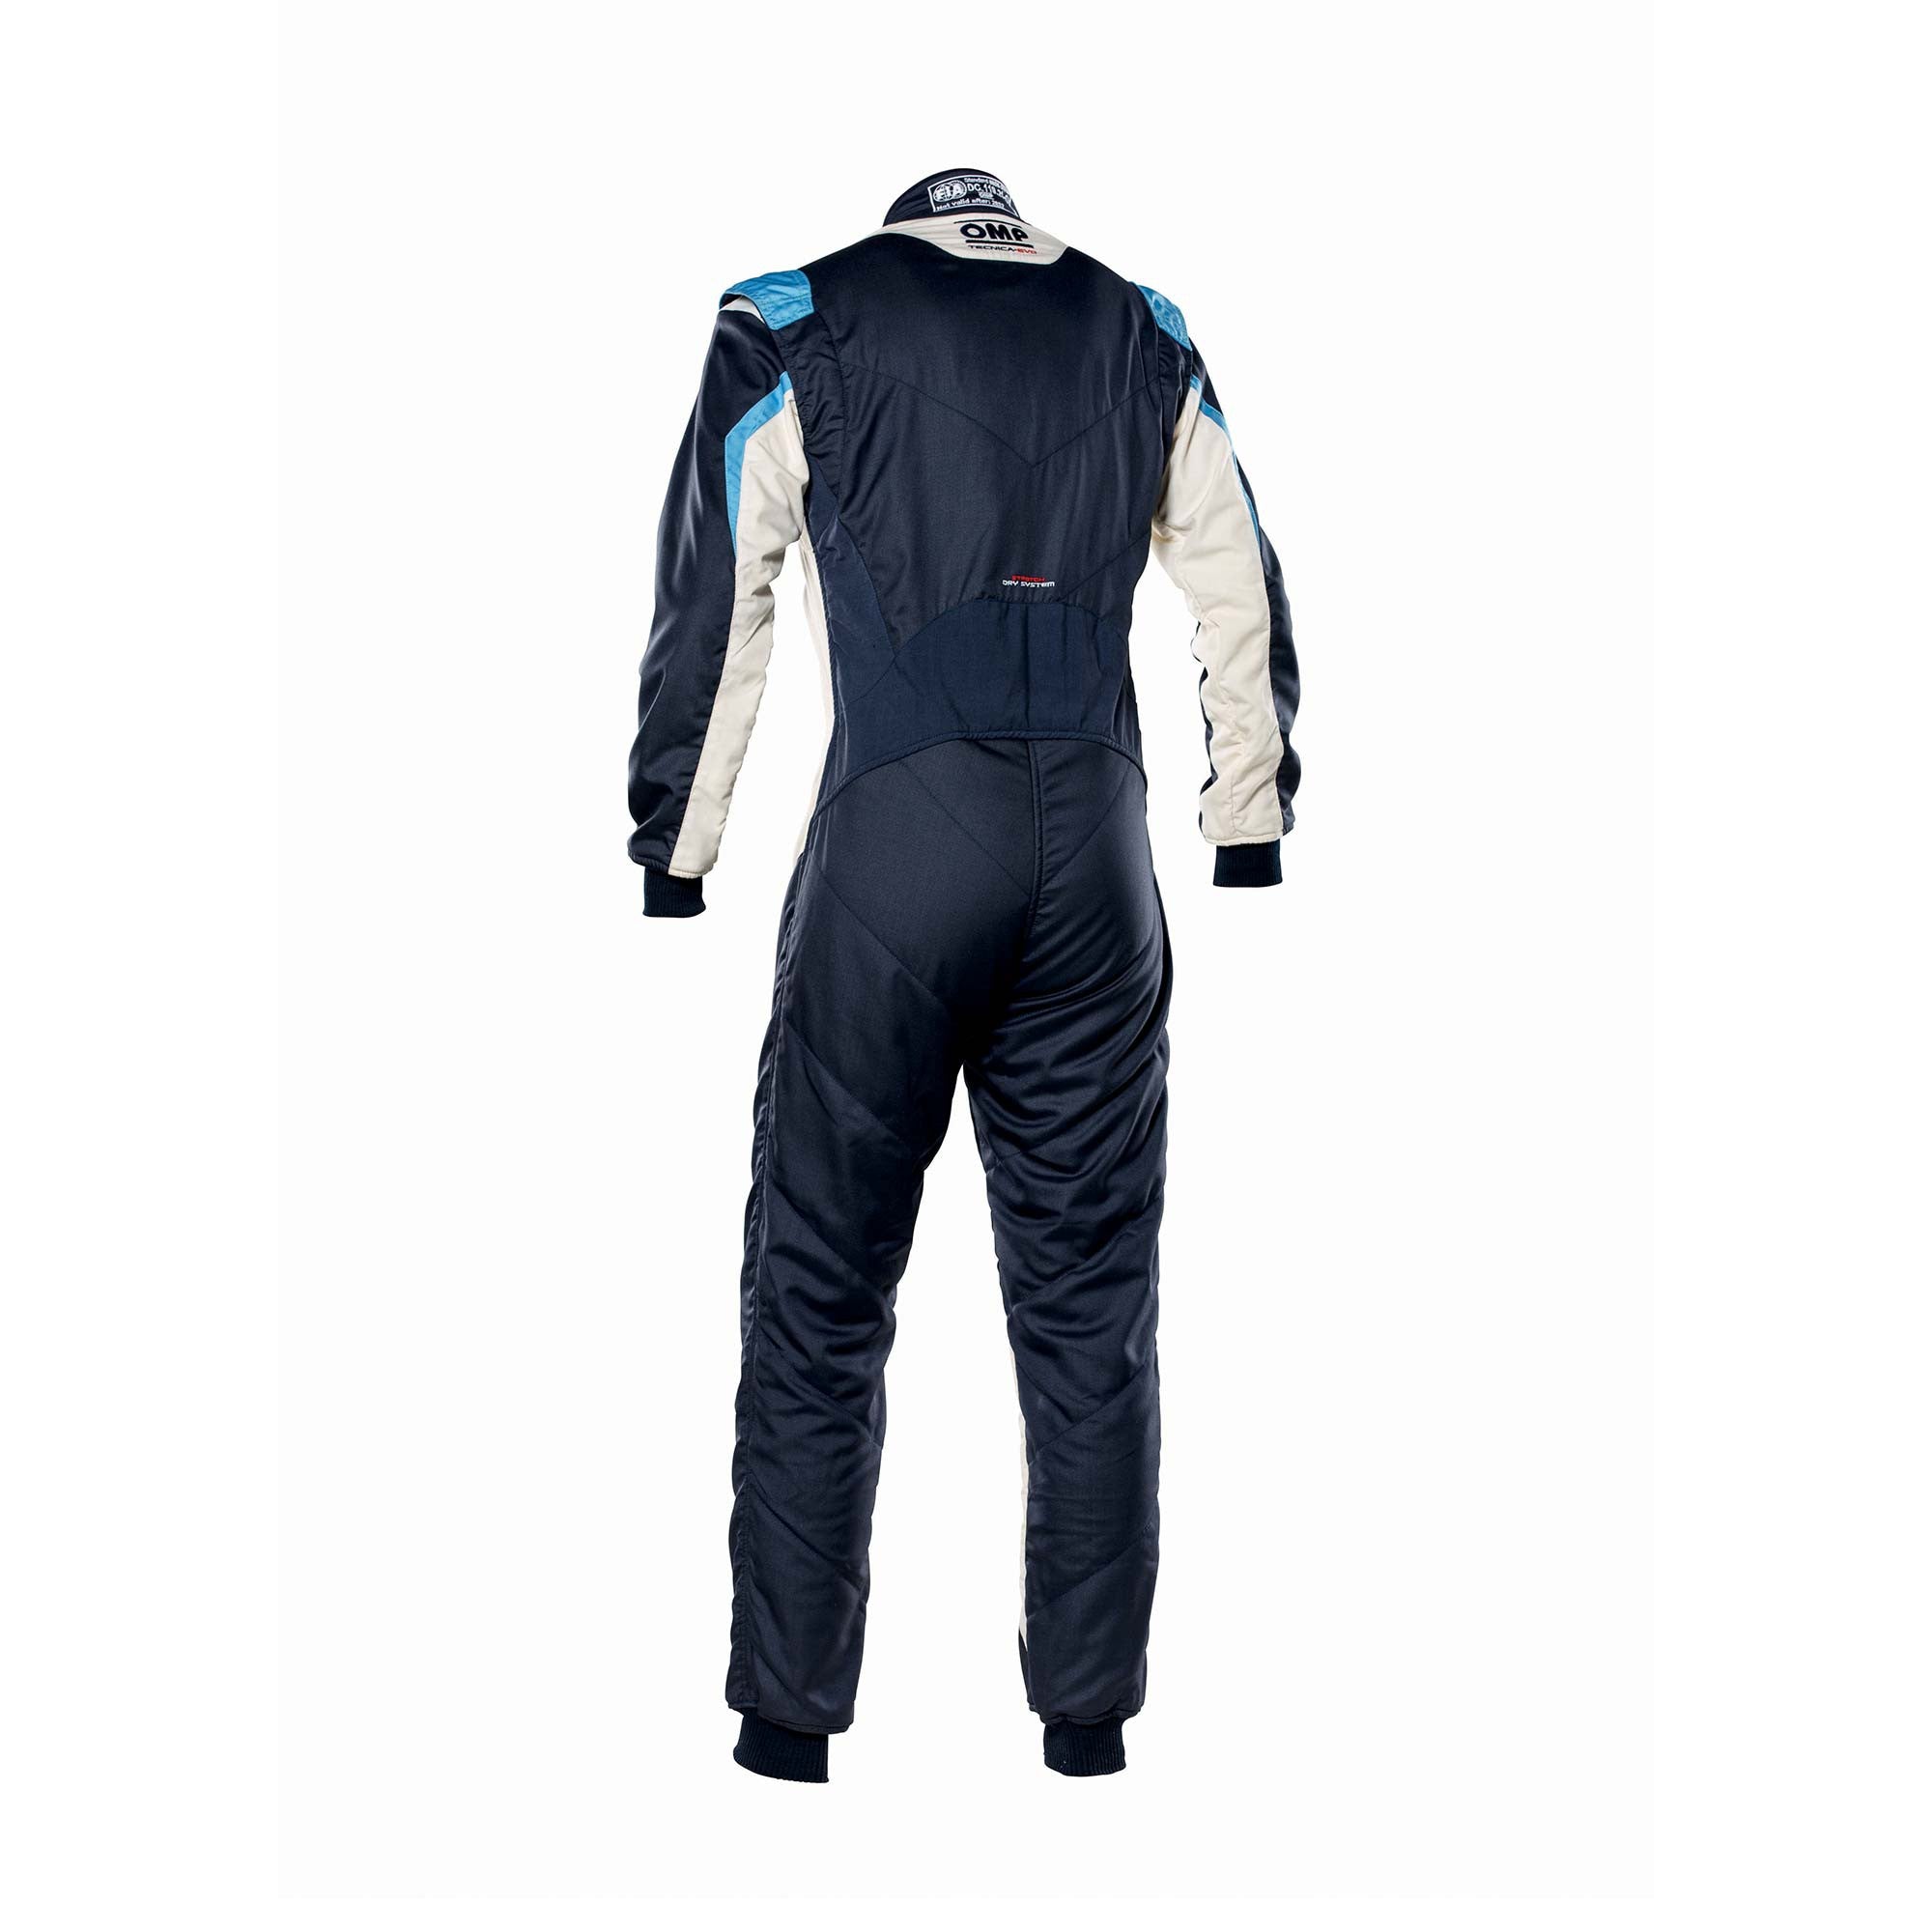 OMP IA0-1859-B01-246-60 Racing suit TECNICA EVO MY2021, FIA 8856-2018, navy blue/white/grey/cyan, size 60 Photo-1 